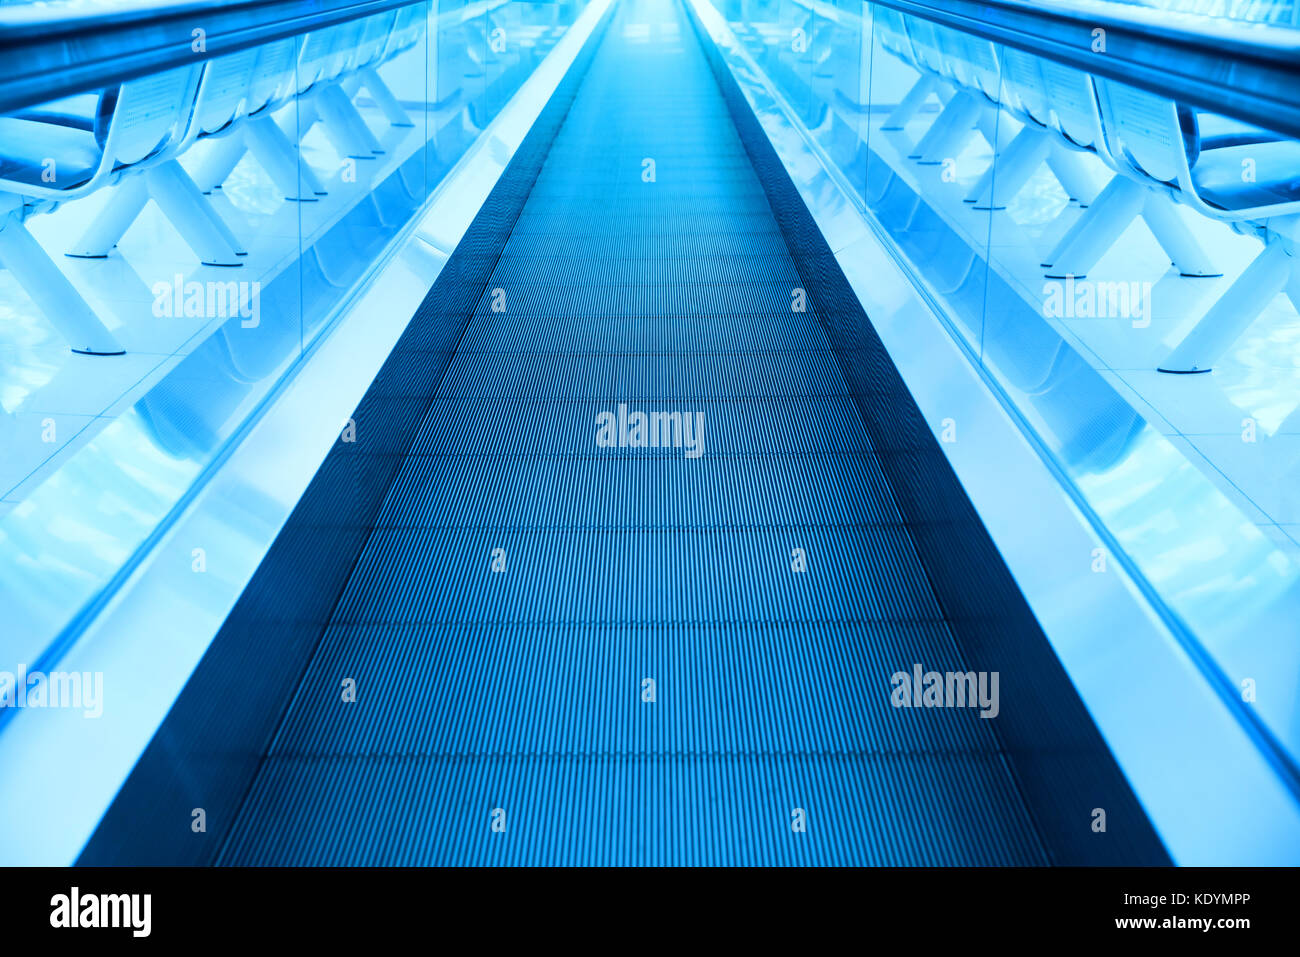 Concetto di viaggio. escalator cammino interno moderno aeroporto terminale. immagine in colori blu Foto Stock